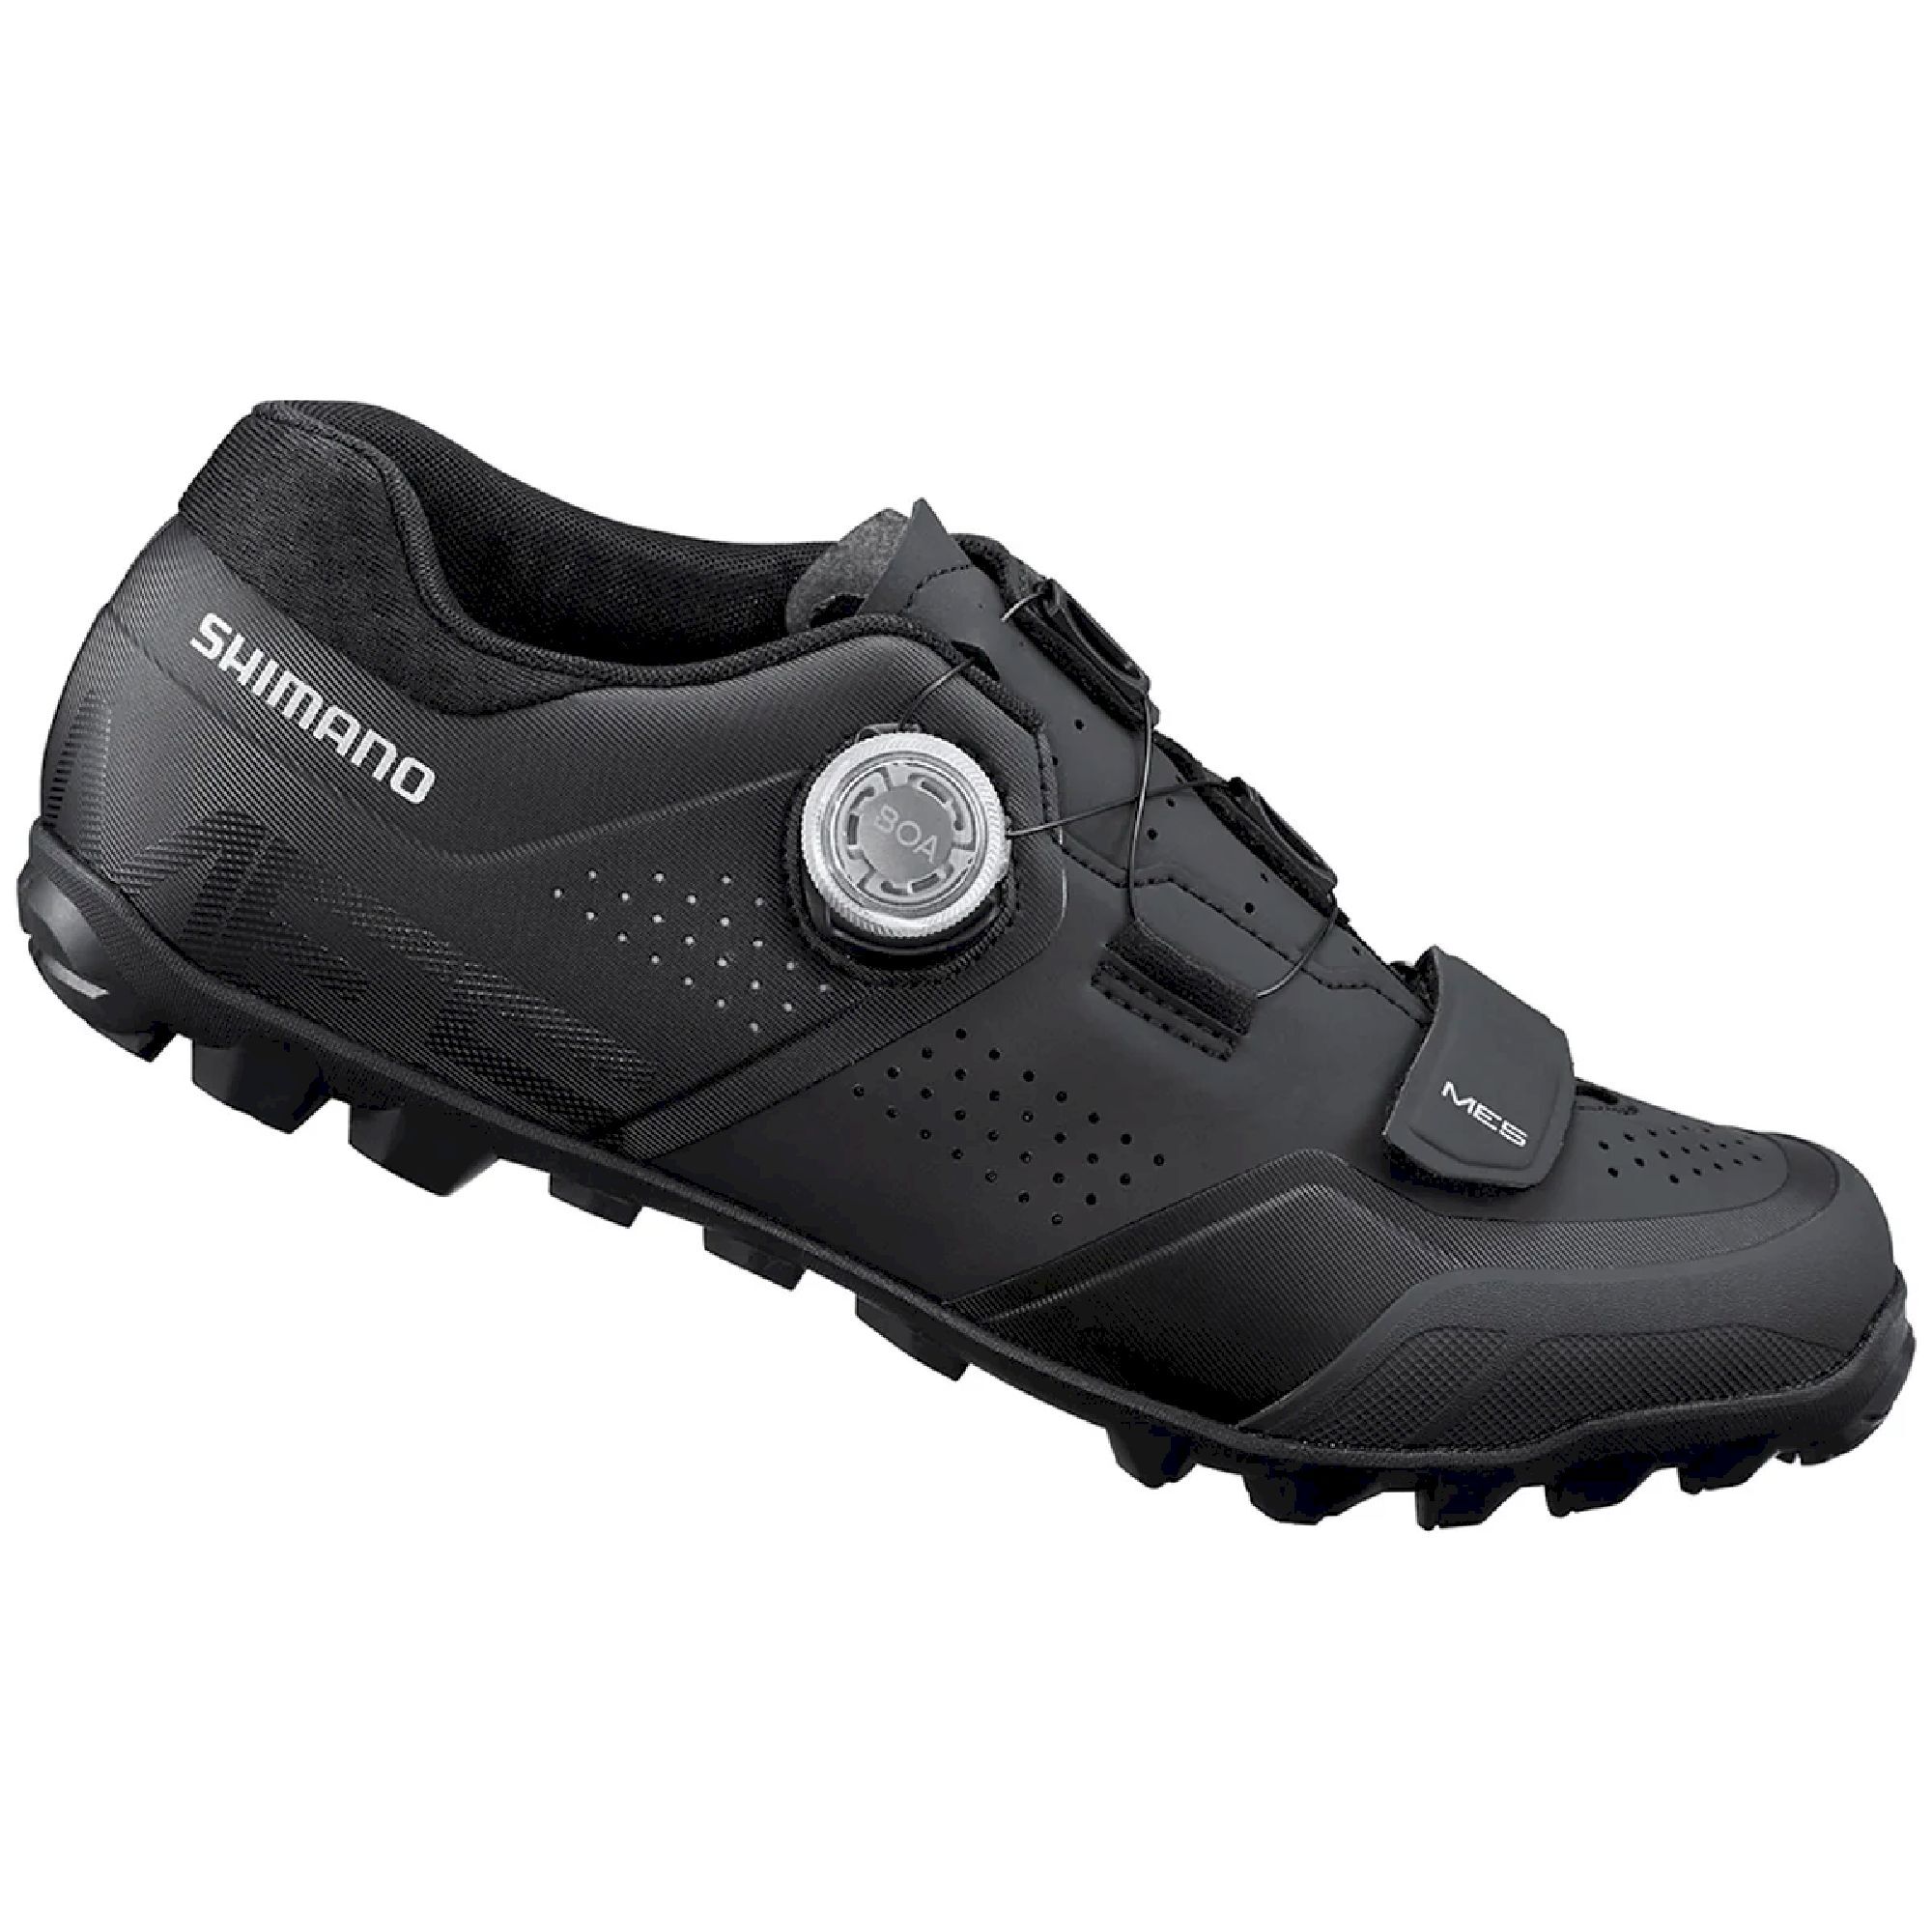 Shimano ME502 - Mountain Bike shoes - Men's